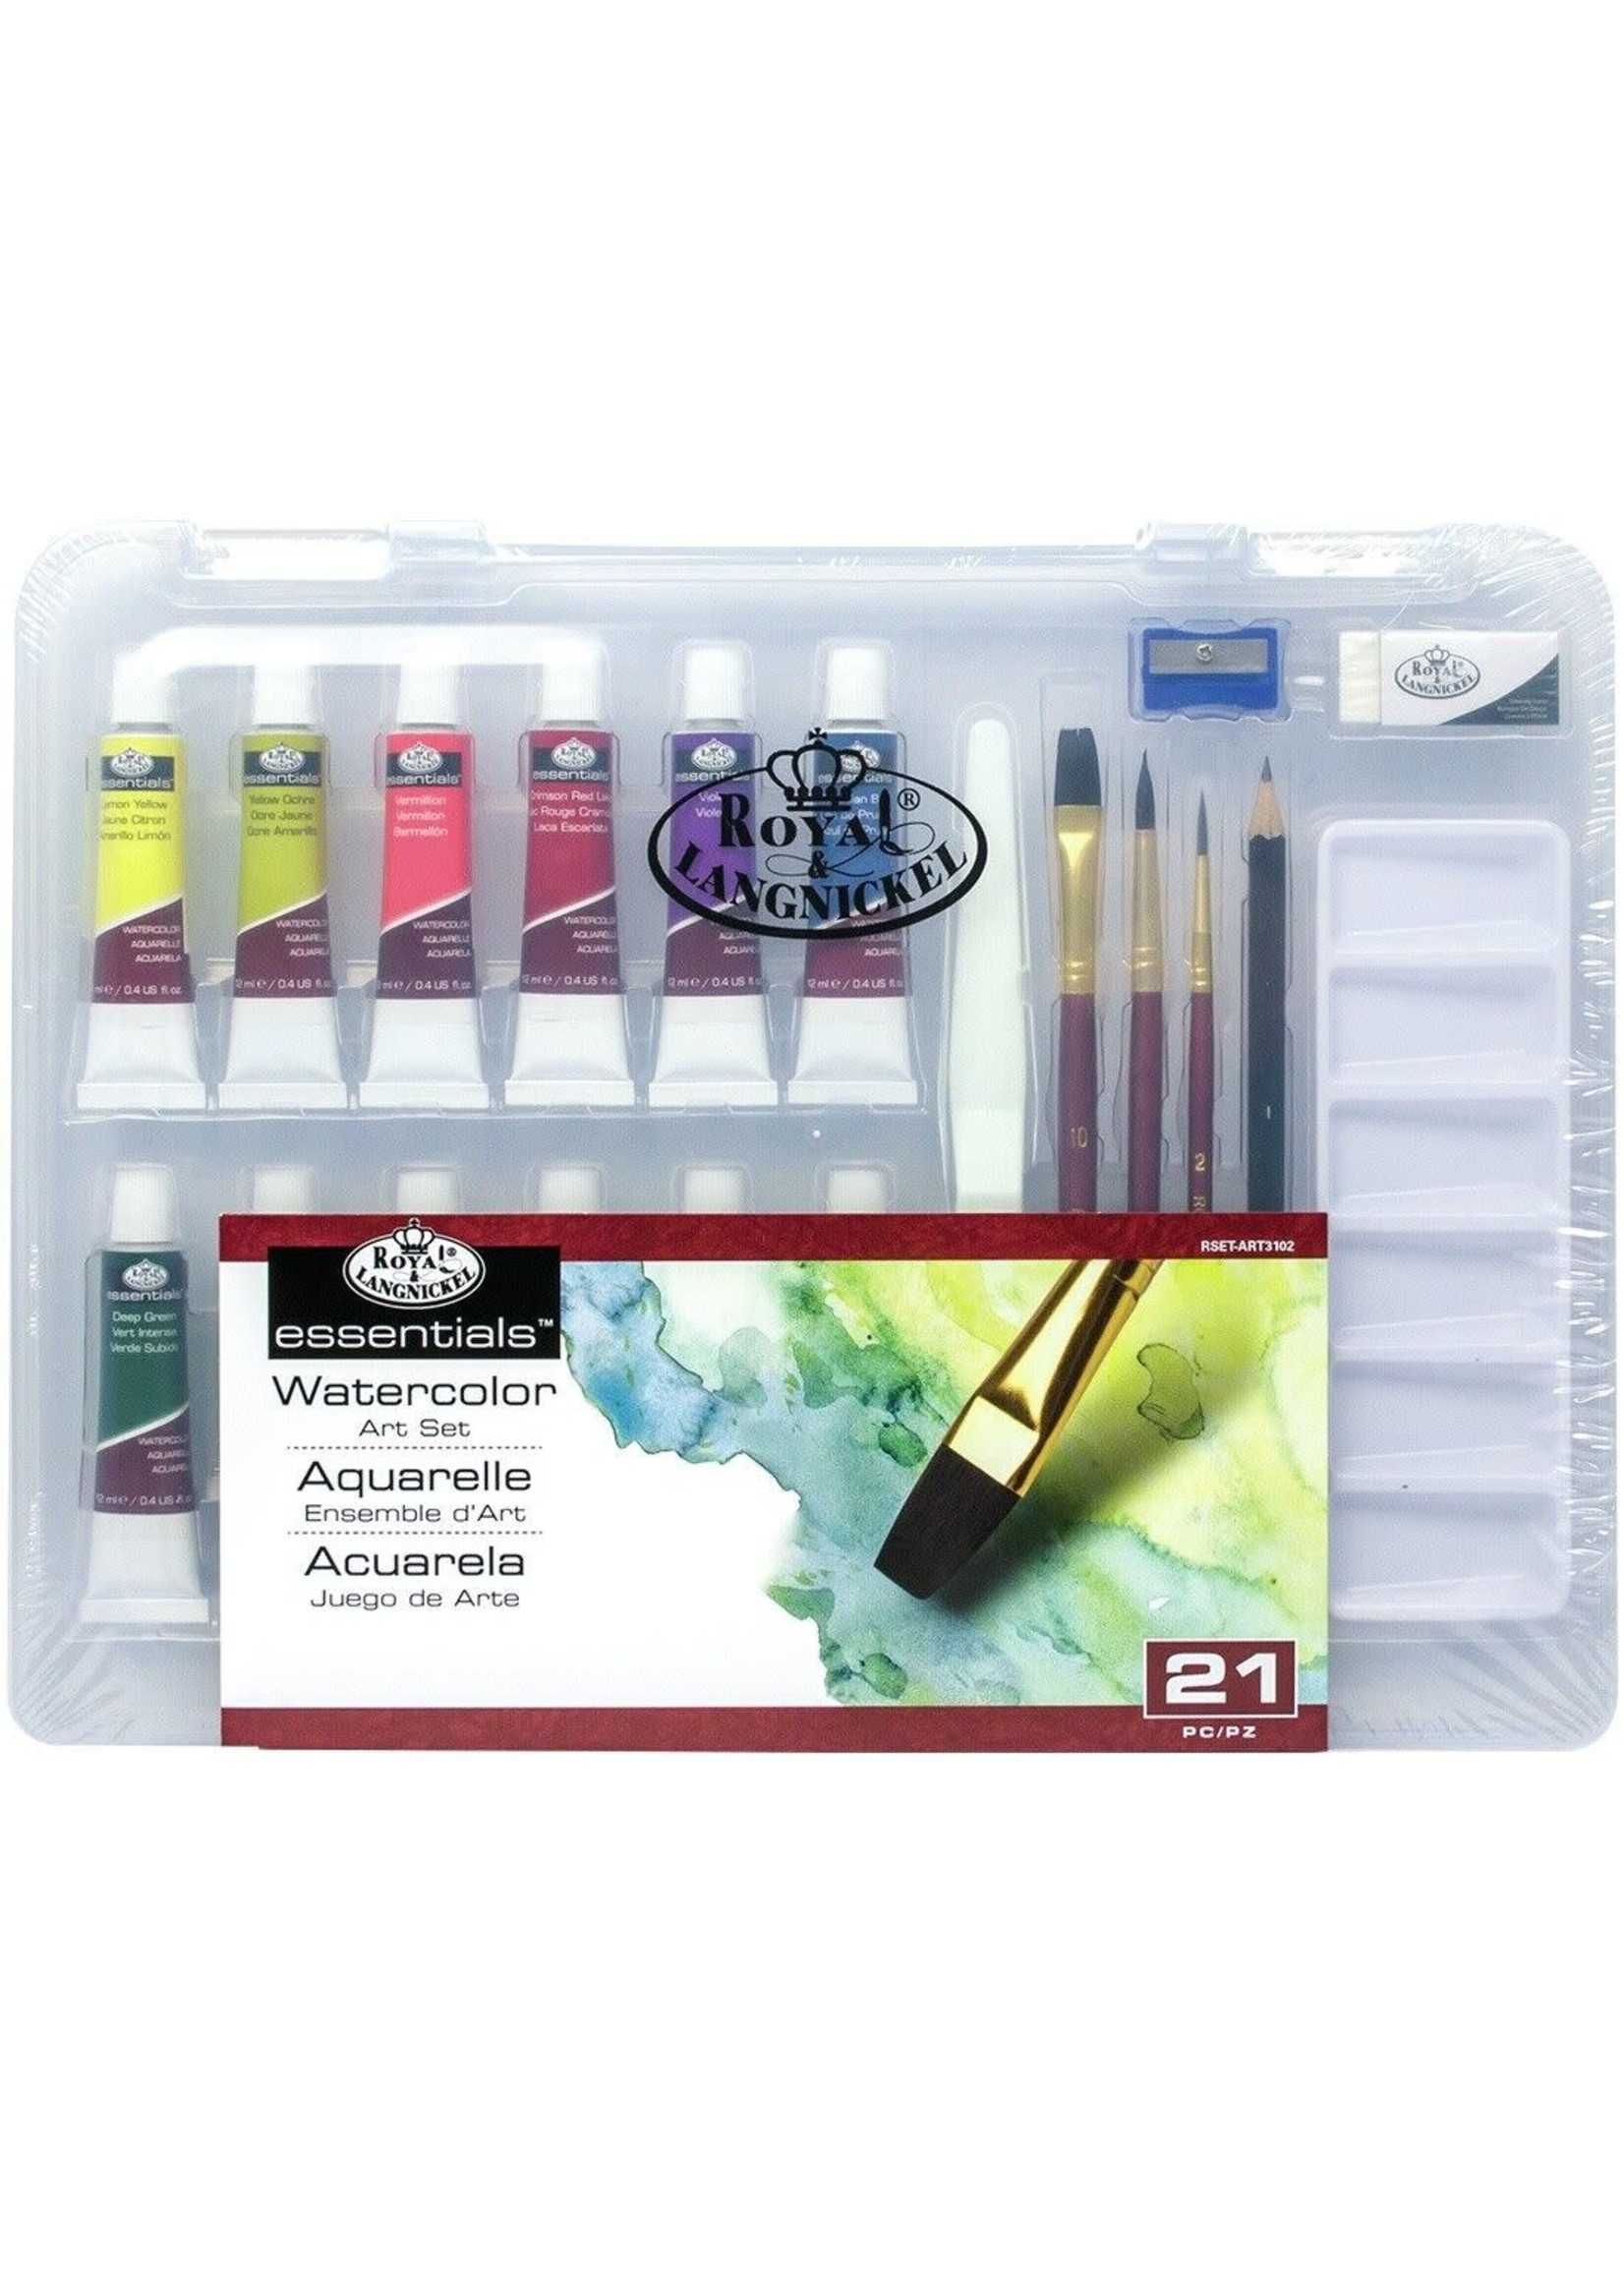 Essentials Watercolor - Art set